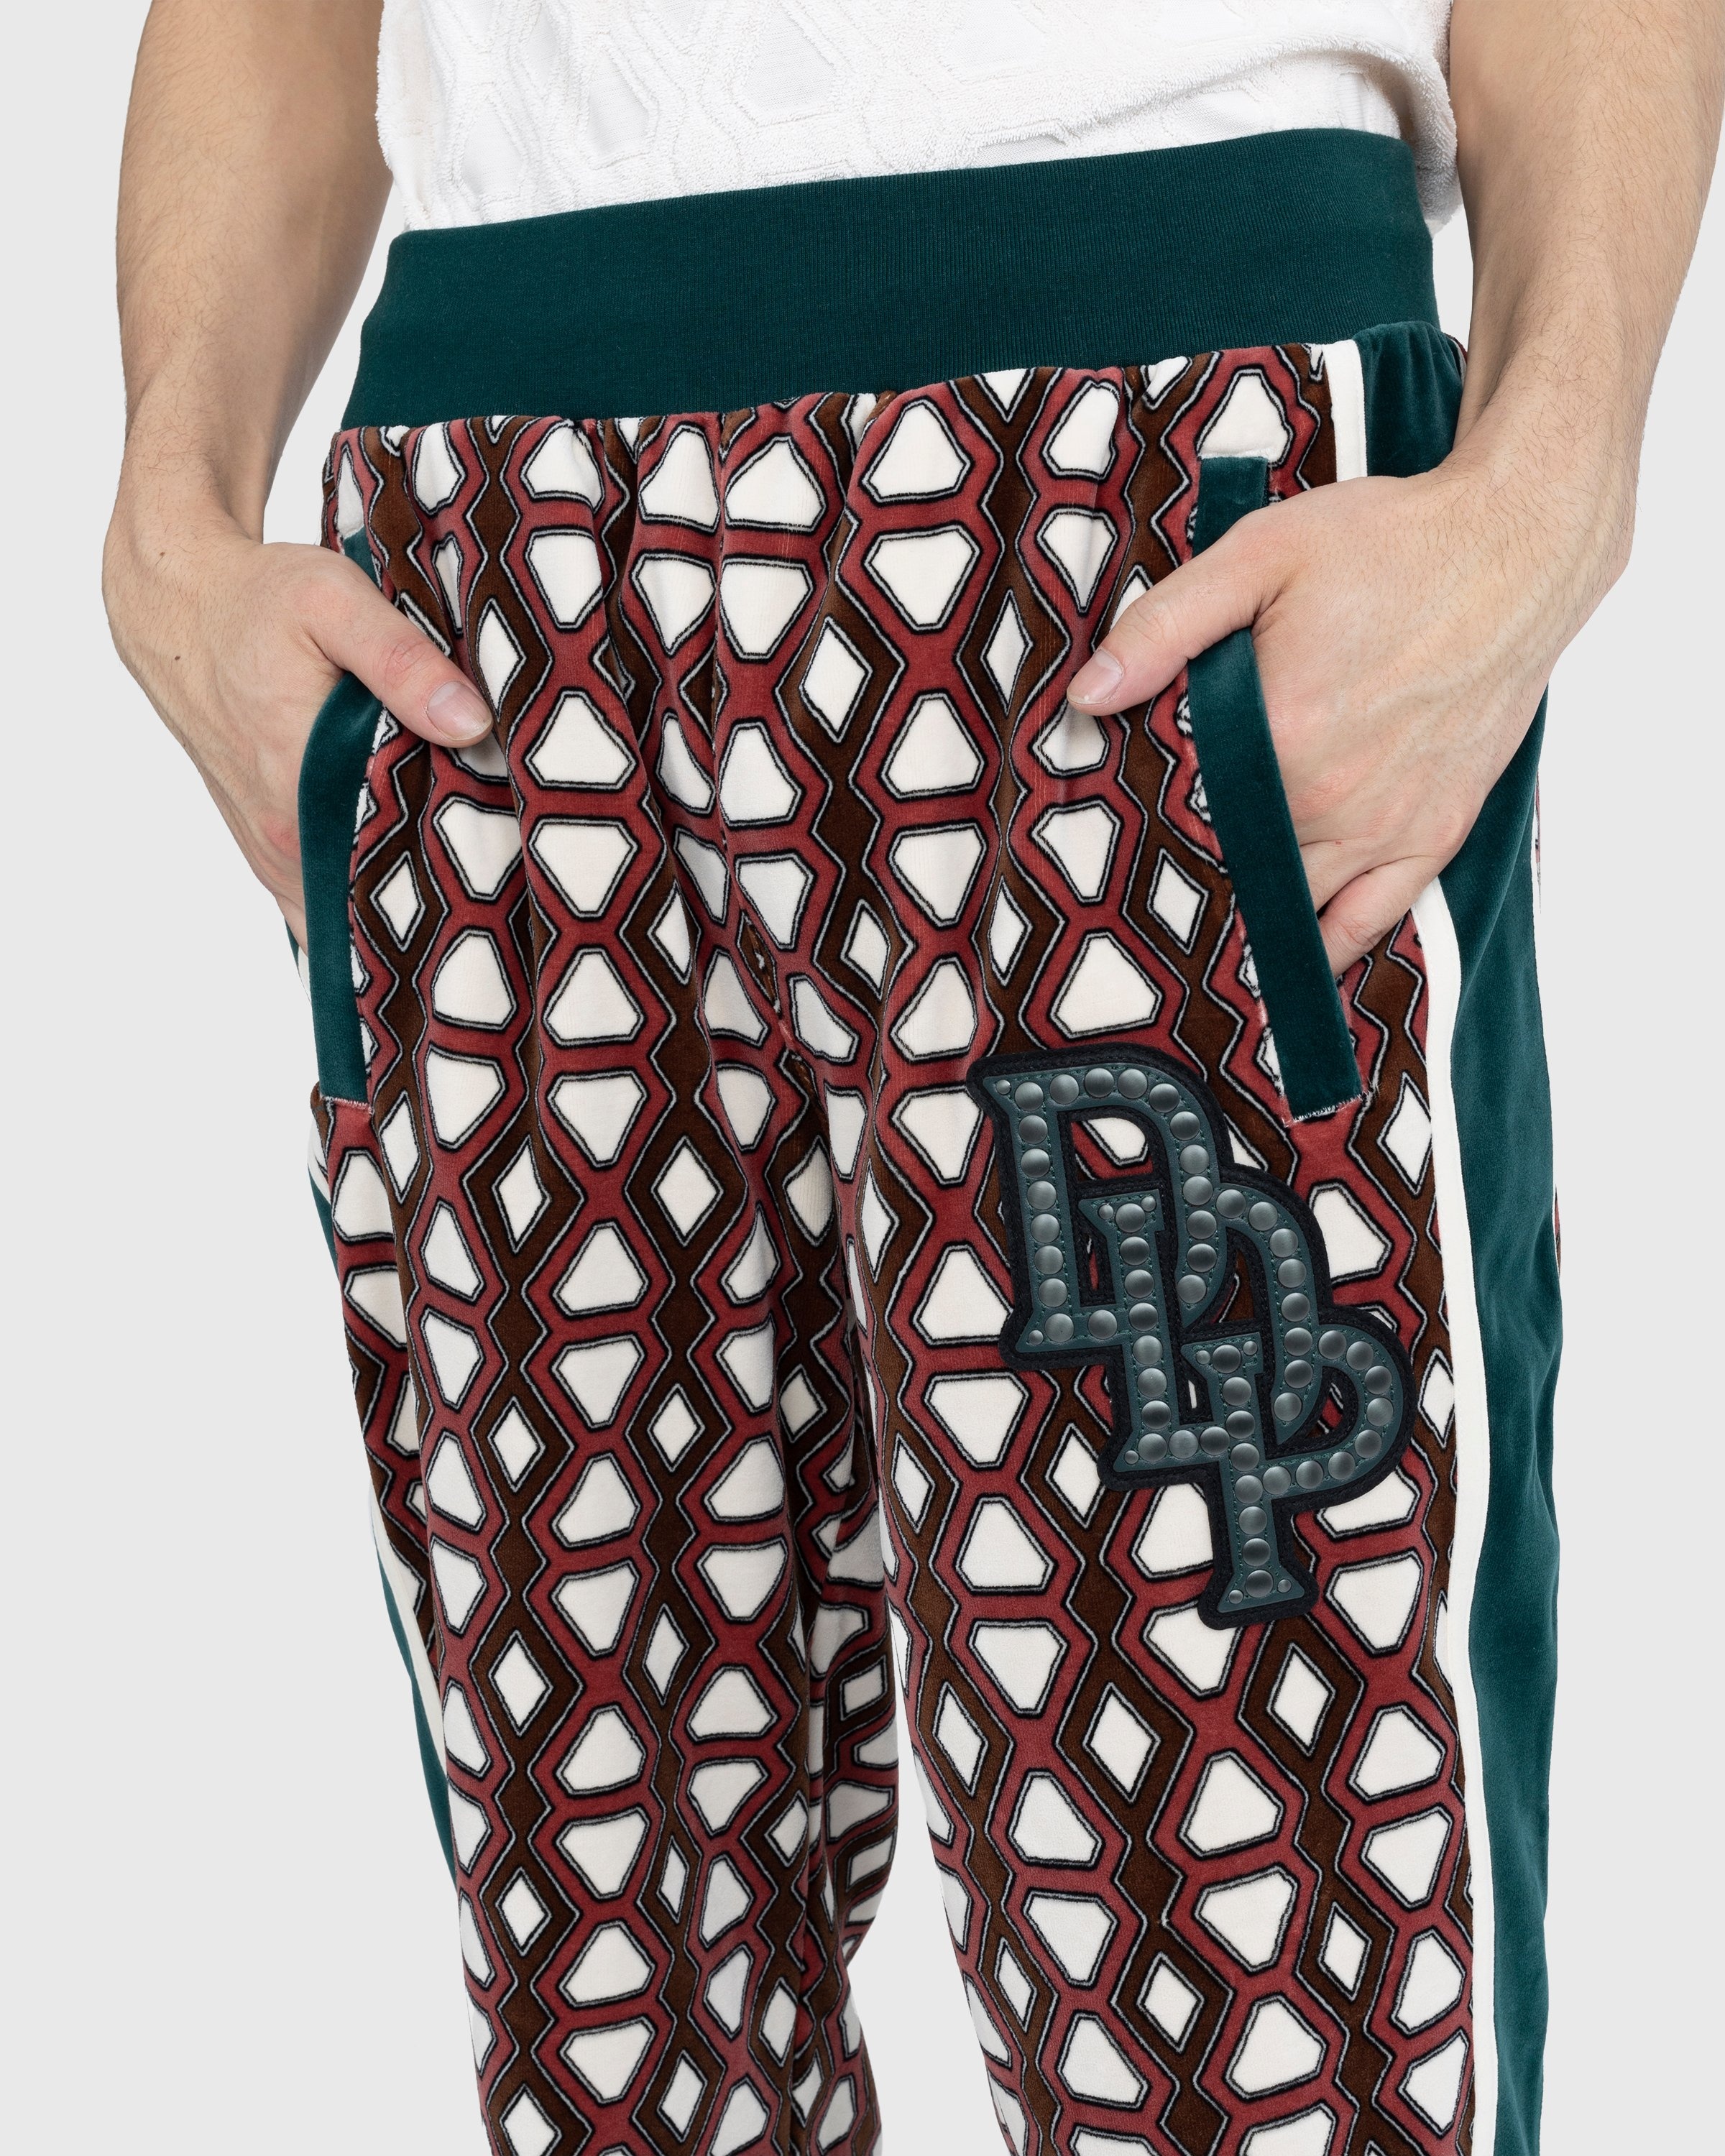 Louis Vuitton Nylon Tracksuit Shorts